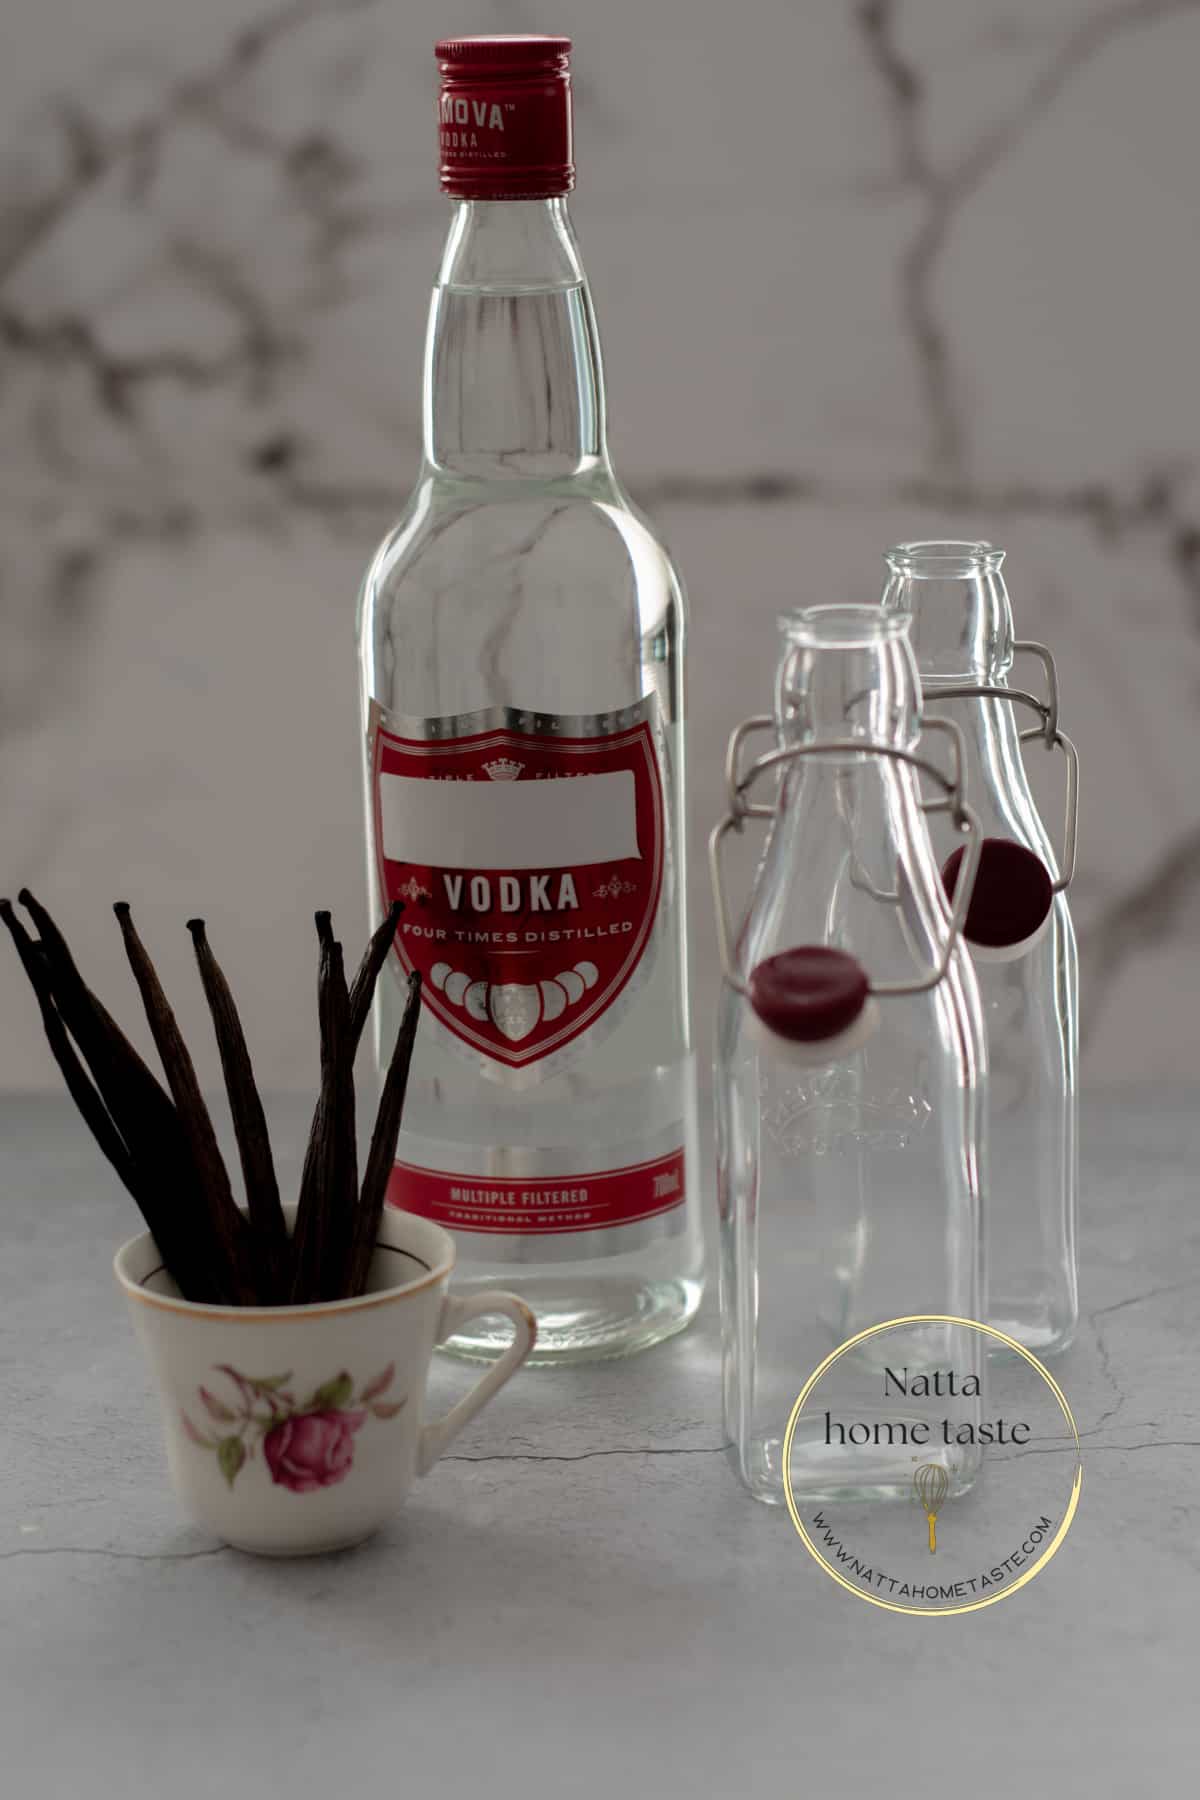 Una botella de vodka, dos botellas de vidrio vacías y vainas de vainilla en un pequeño pocillo.